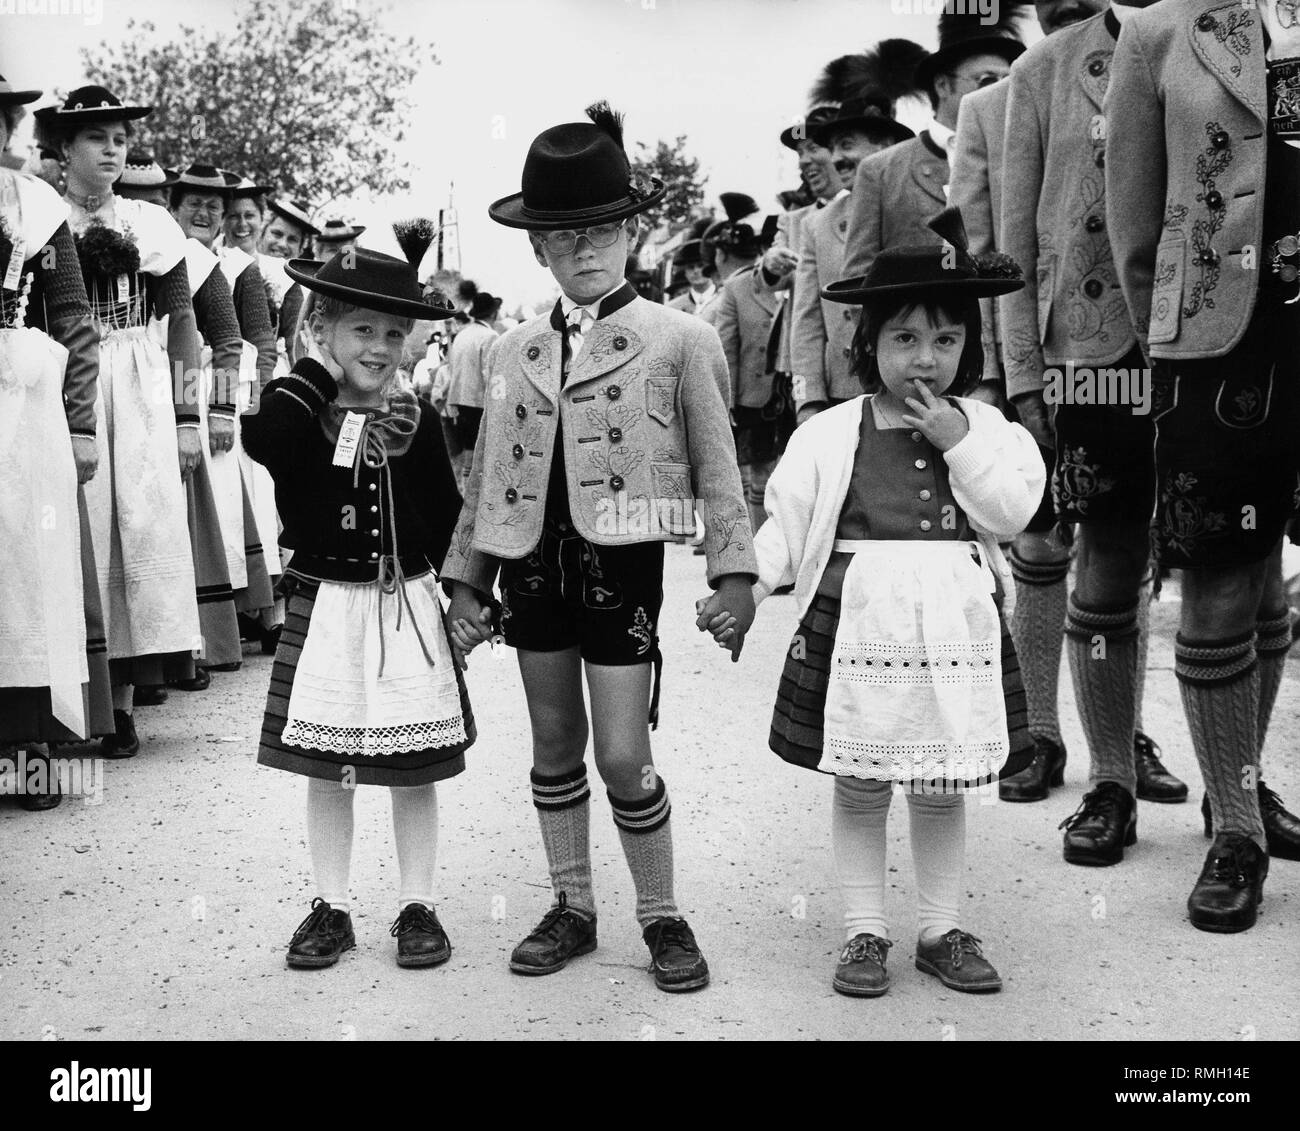 I bambini in costume tradizionale al fesival con costumi tradizionali in Gmund am Tegernsee. Immagine non datata. Foto Stock